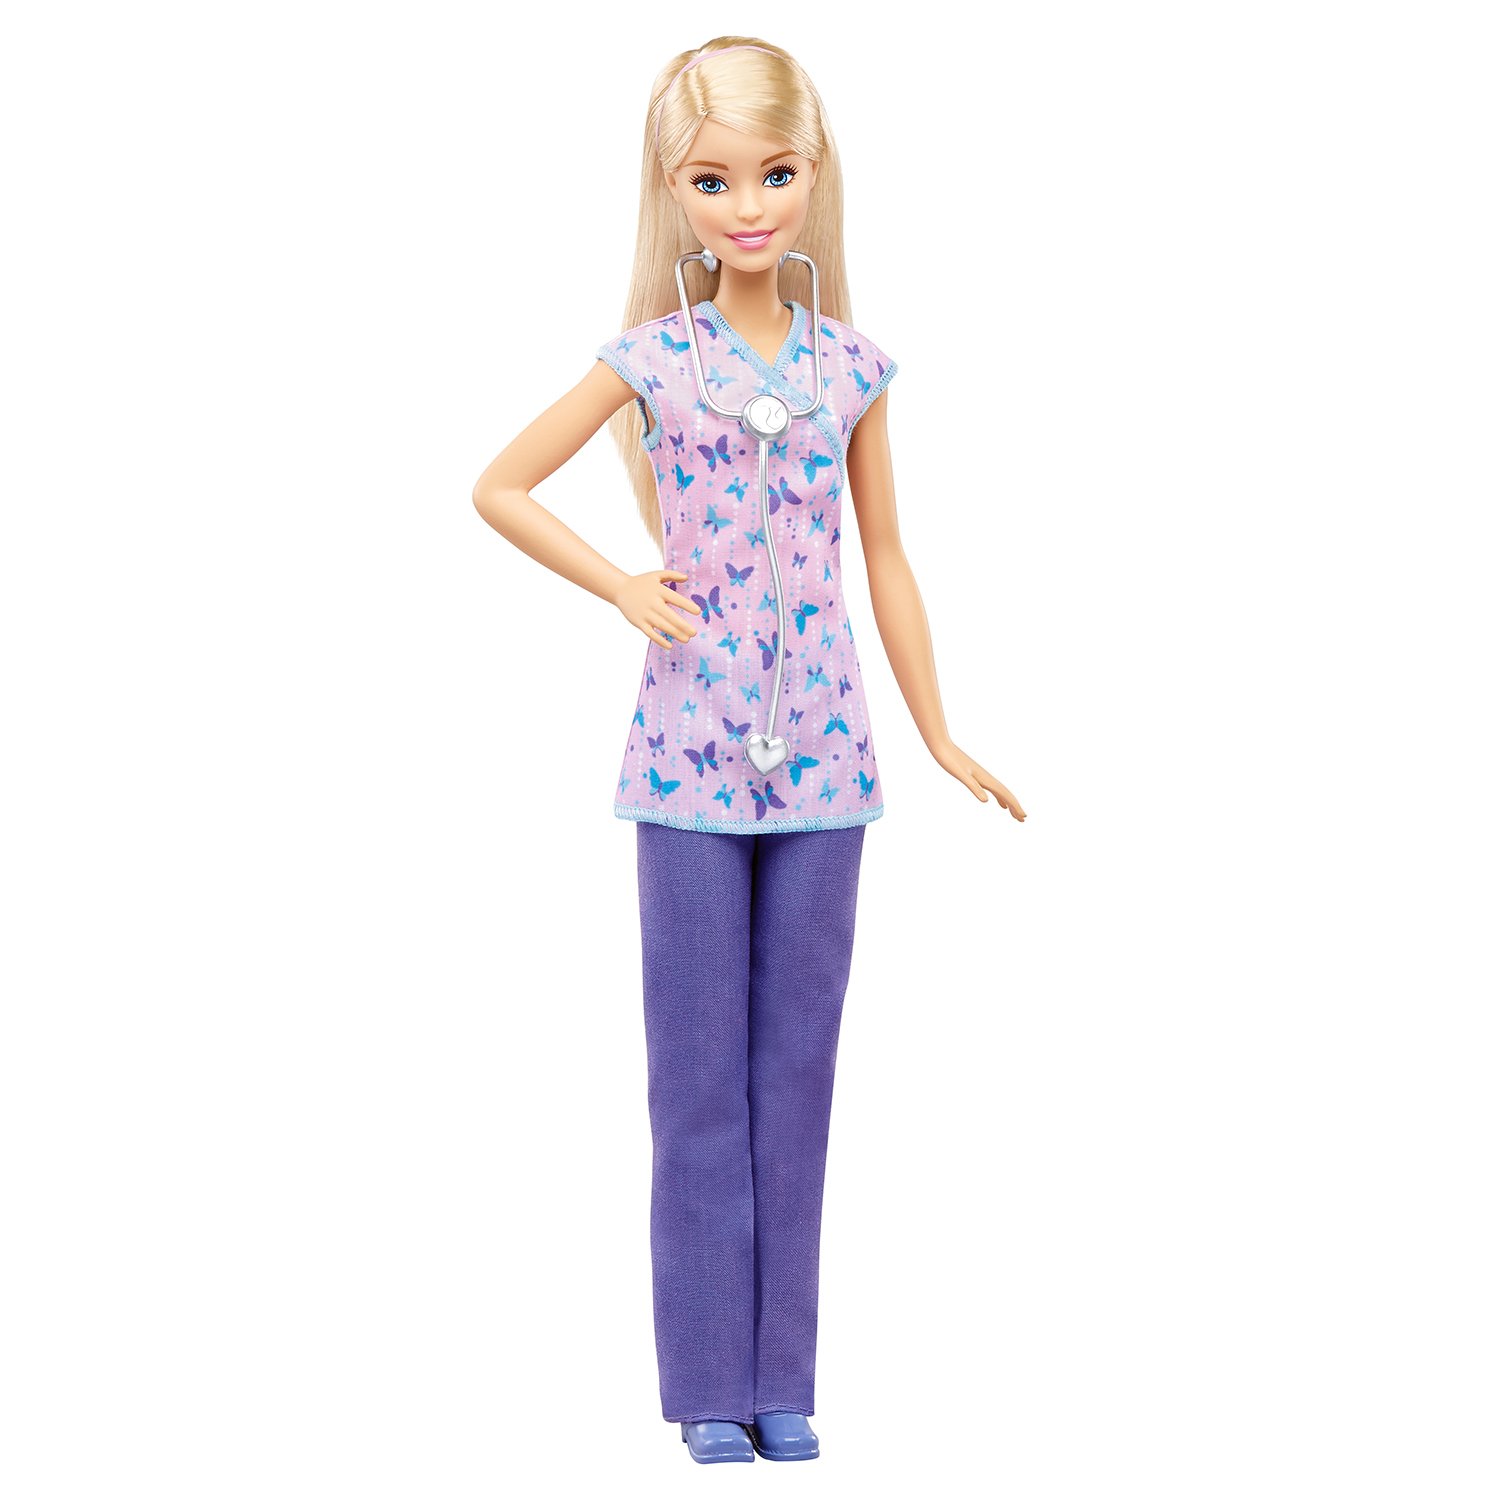 Игрушка барби купить. Кукла Barbie "кем быть Кен", fxp01. Кукла Barbie праздничная блондинка, 29 см, drf66. Кукла медсестры Барби dvf50. Barbie кукла dvf50_gtw39.